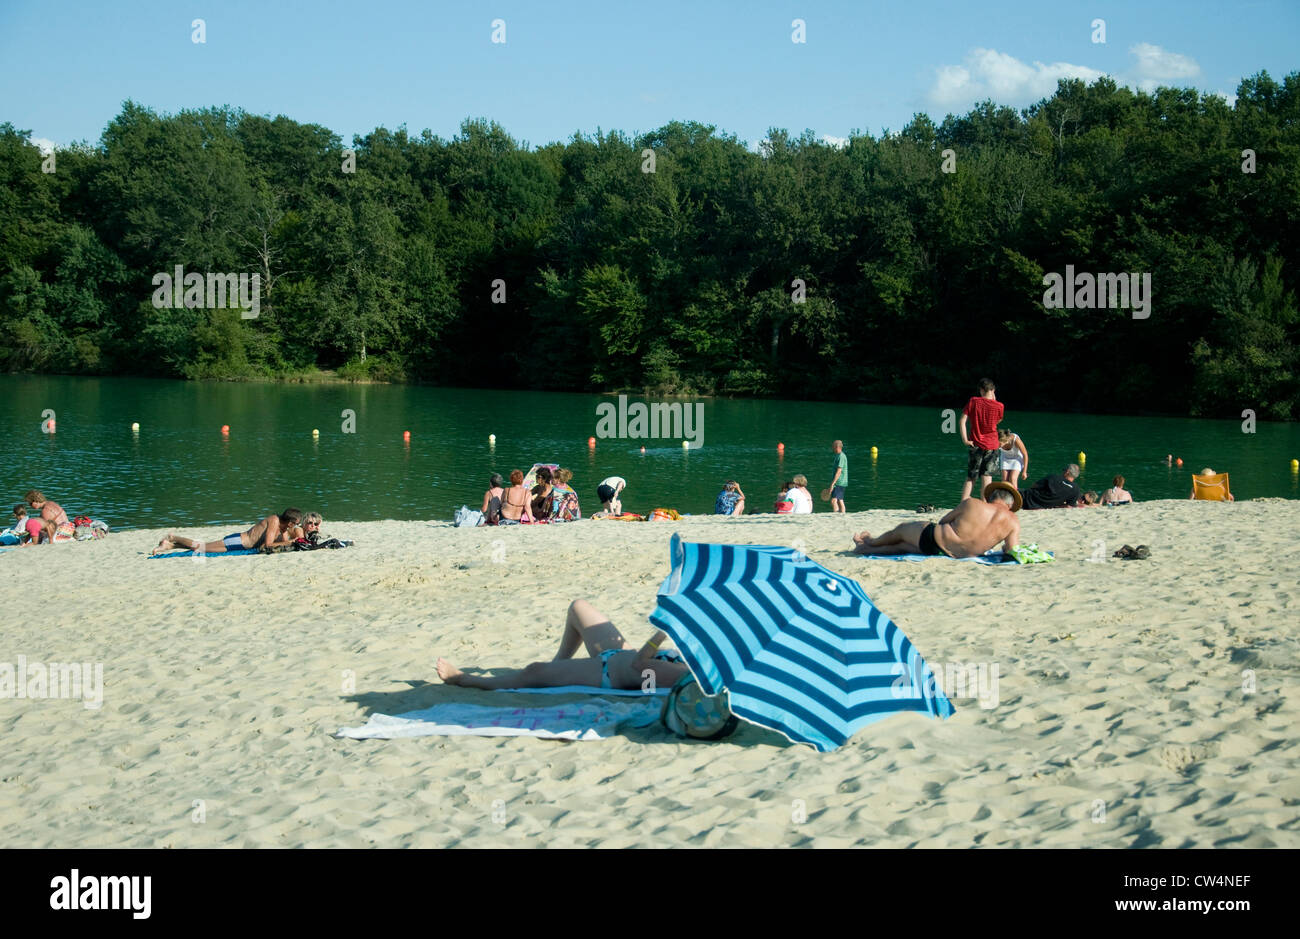 Durante el verano los visitantes disfrutan de un lago de aguas continentales y su playa de arena "importado" en Lupiac, en el suroeste de Francia Foto de stock